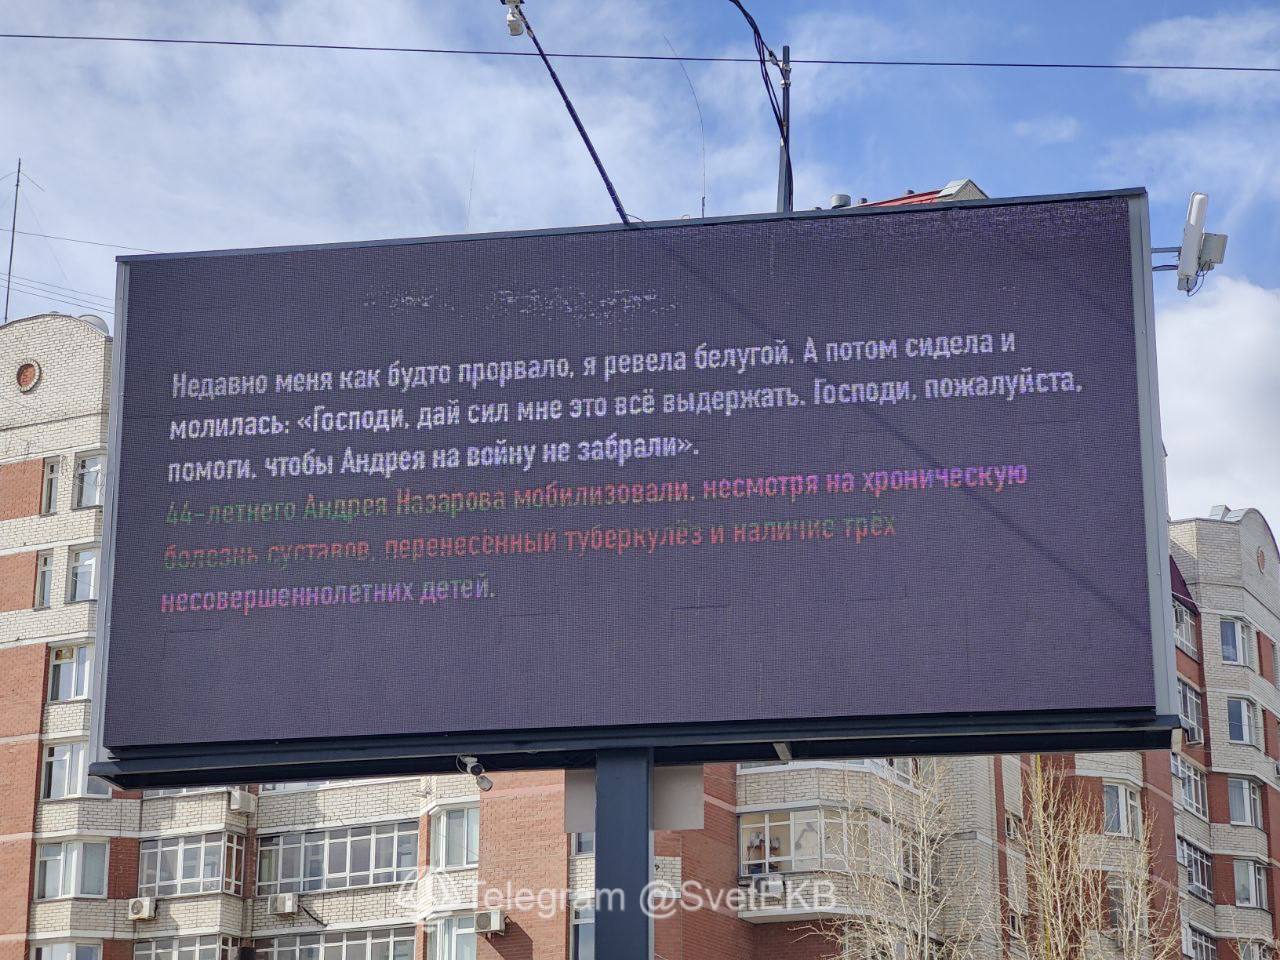 "Нас кинули как мясо, без прикрытия": в России появились рекламные щиты с цитатами "мобиков" о реалиях войны против Украины. Фото